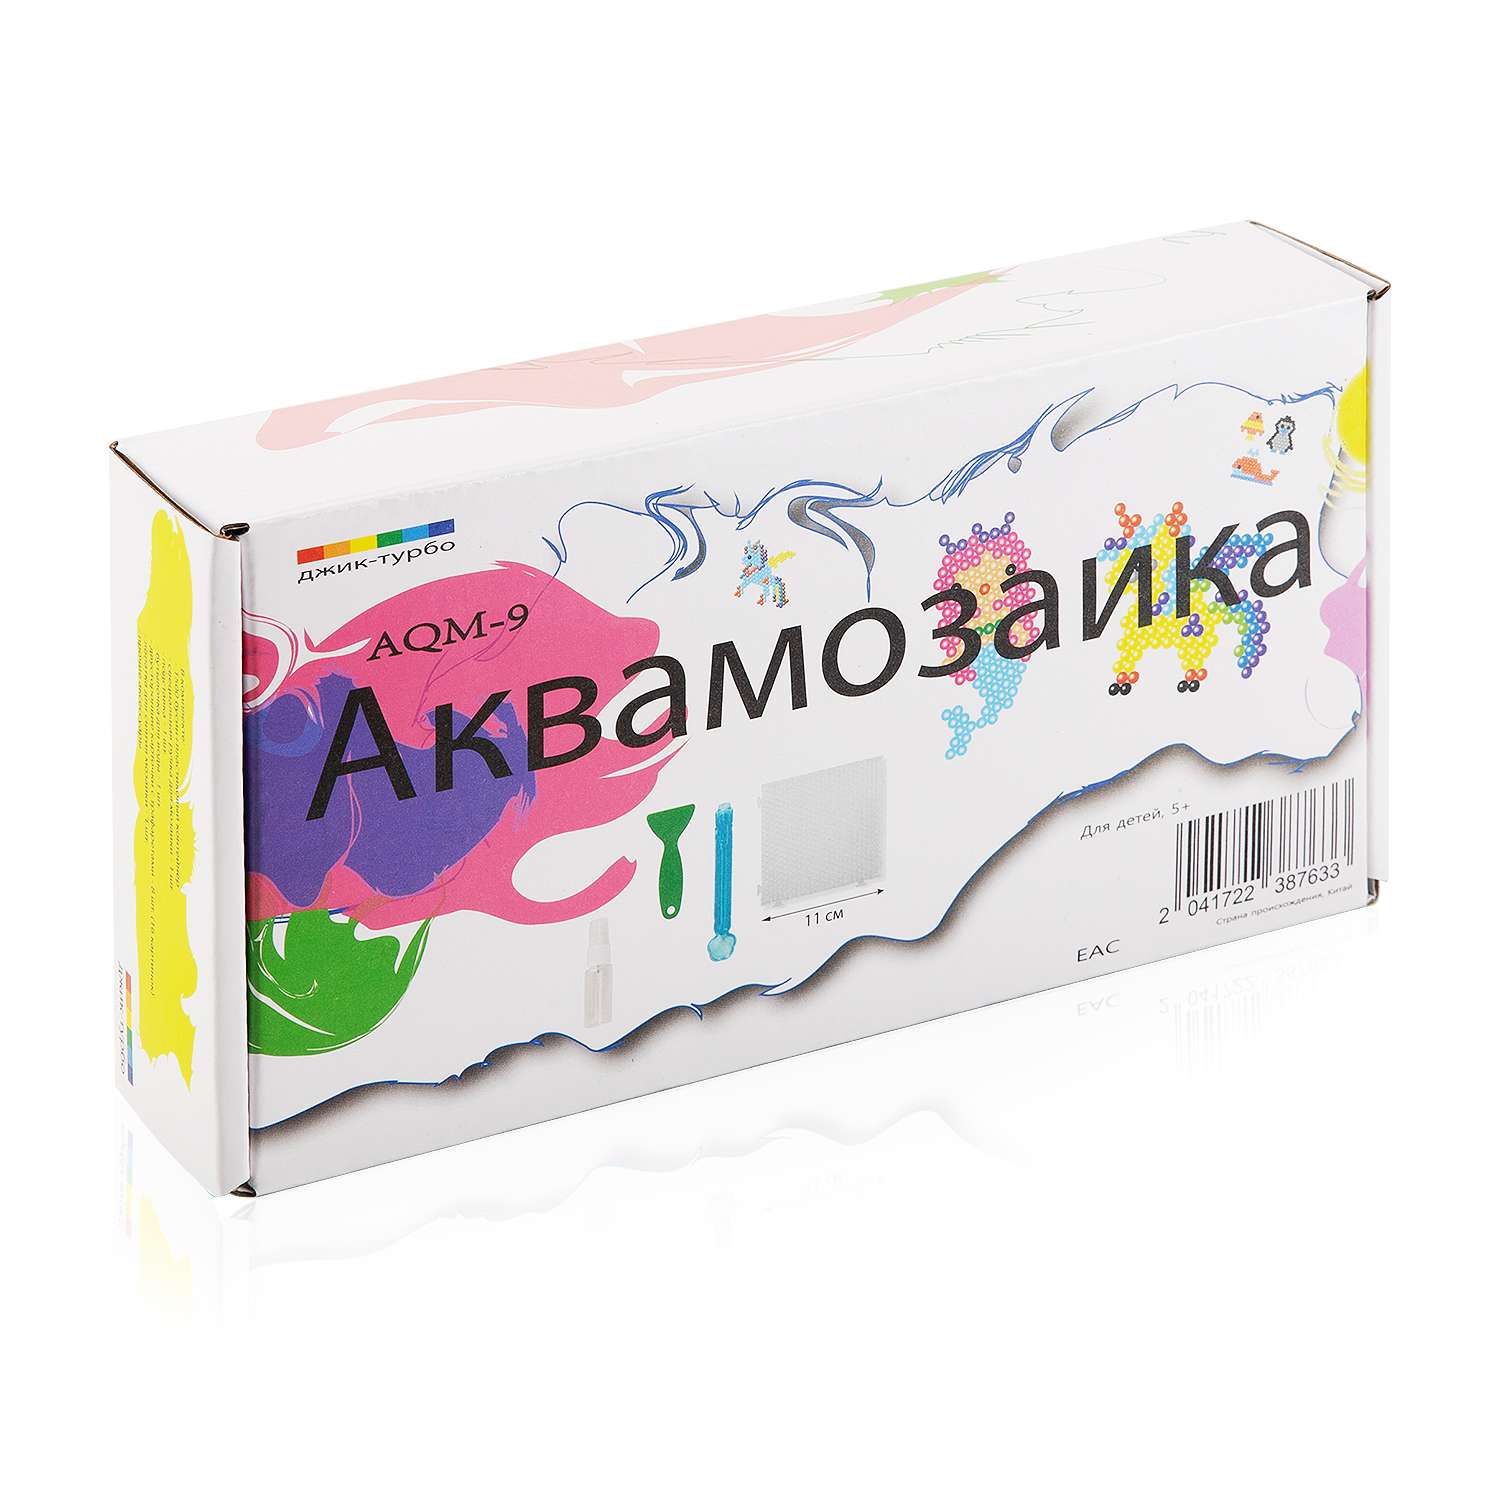 Аквамозаика Джик-Турбо AQM-9 неоновая для деврчек - фото 11